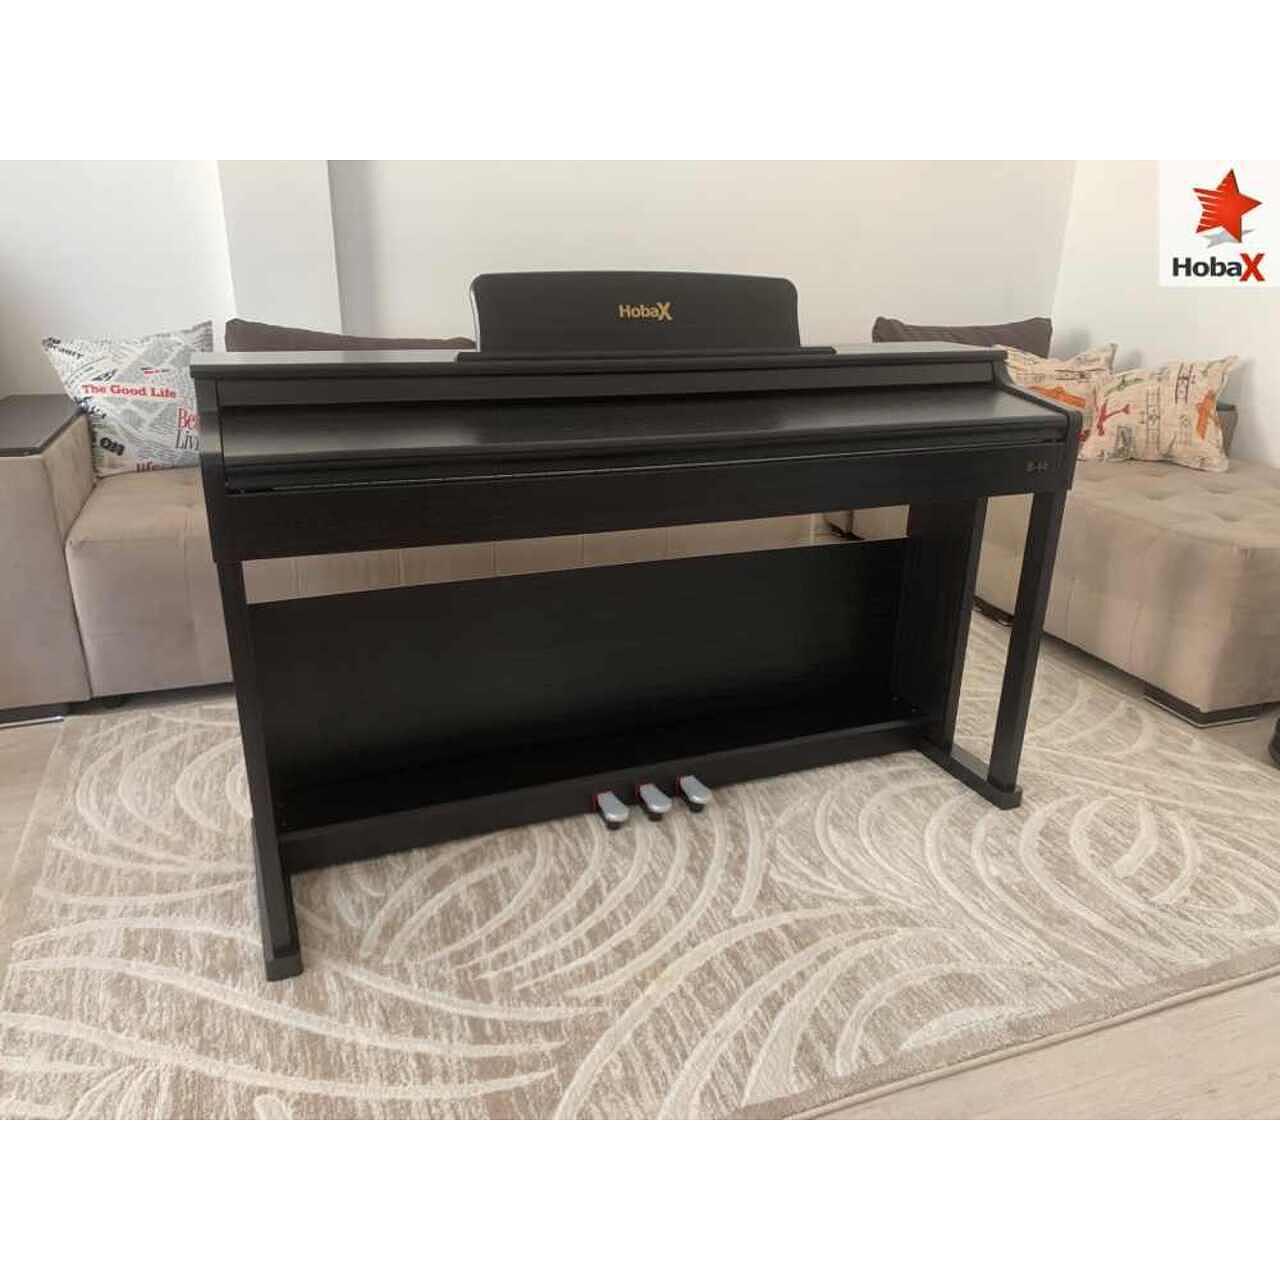 Комплект Дигитално пиано Hobax B-88, тъмен цвят, 88 клавиша HAMMER ACTION тежка клавиатура, 7 октави, 8 звуци, 128 ритми, с тройна педалиера. +3 ПОДАРЪКА – слушалки,стикери за клавиши и пейка